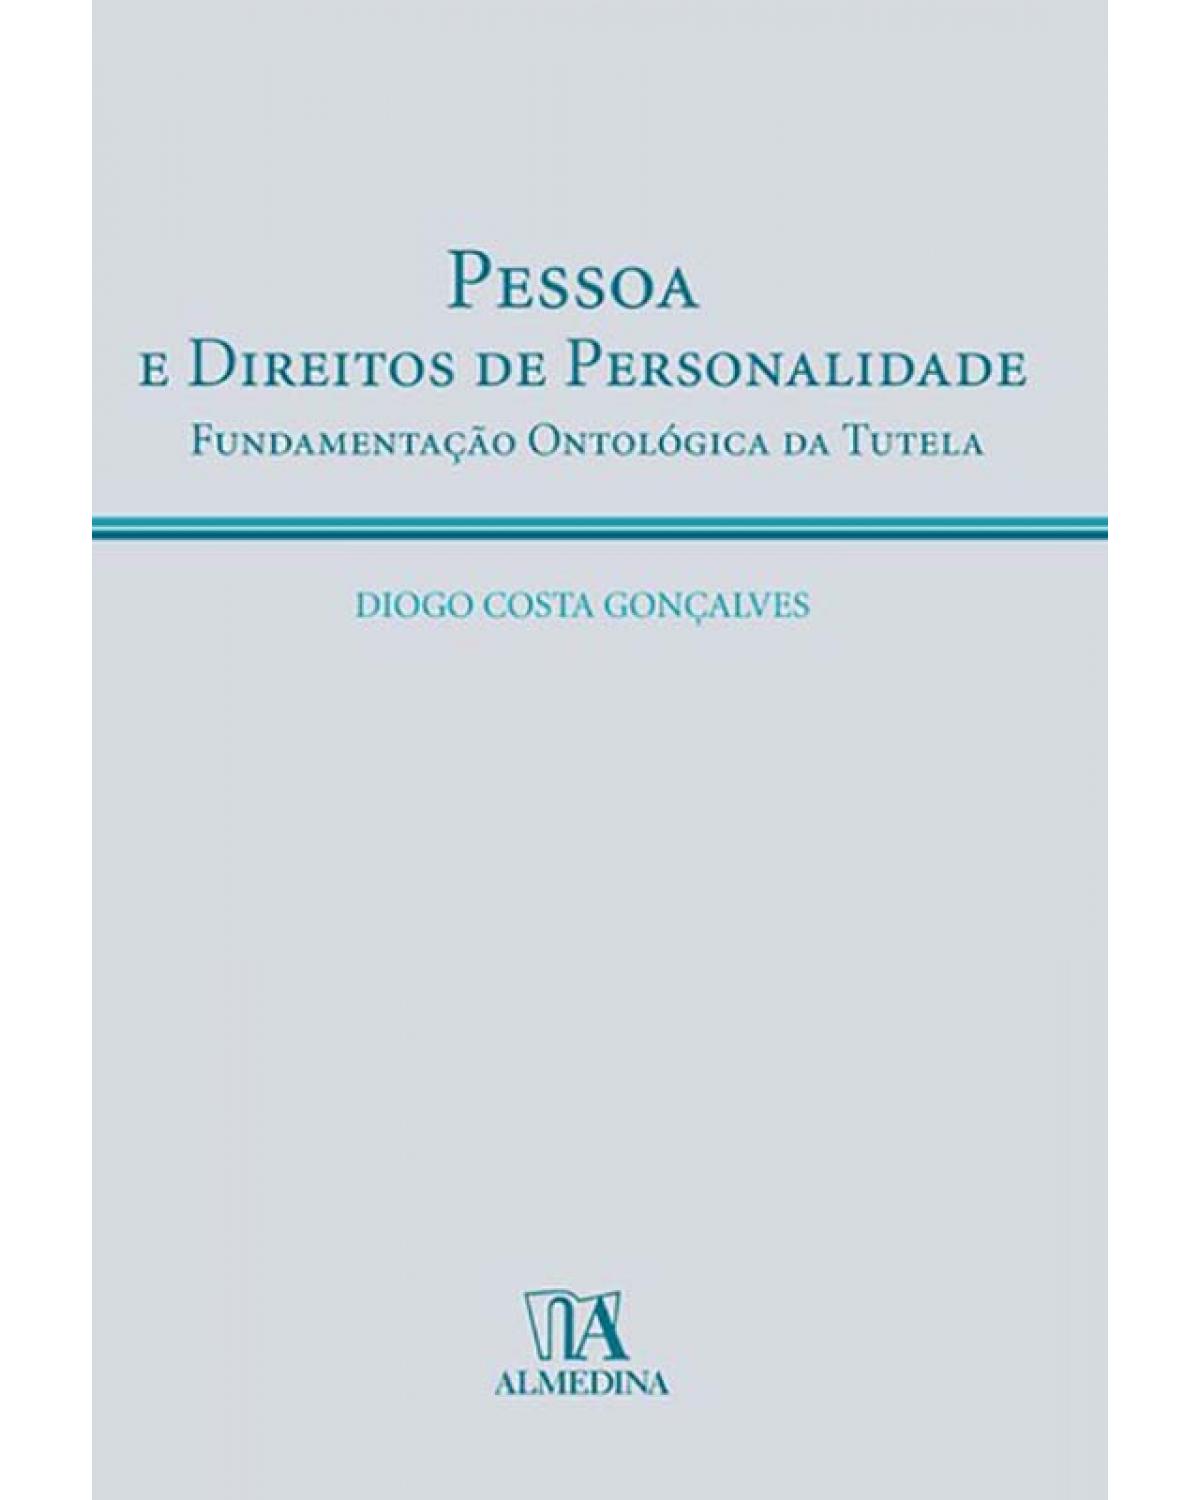 Pessoa e direitos de personalidade - fundamentação ontológica da tutela - 1ª Edição | 2008